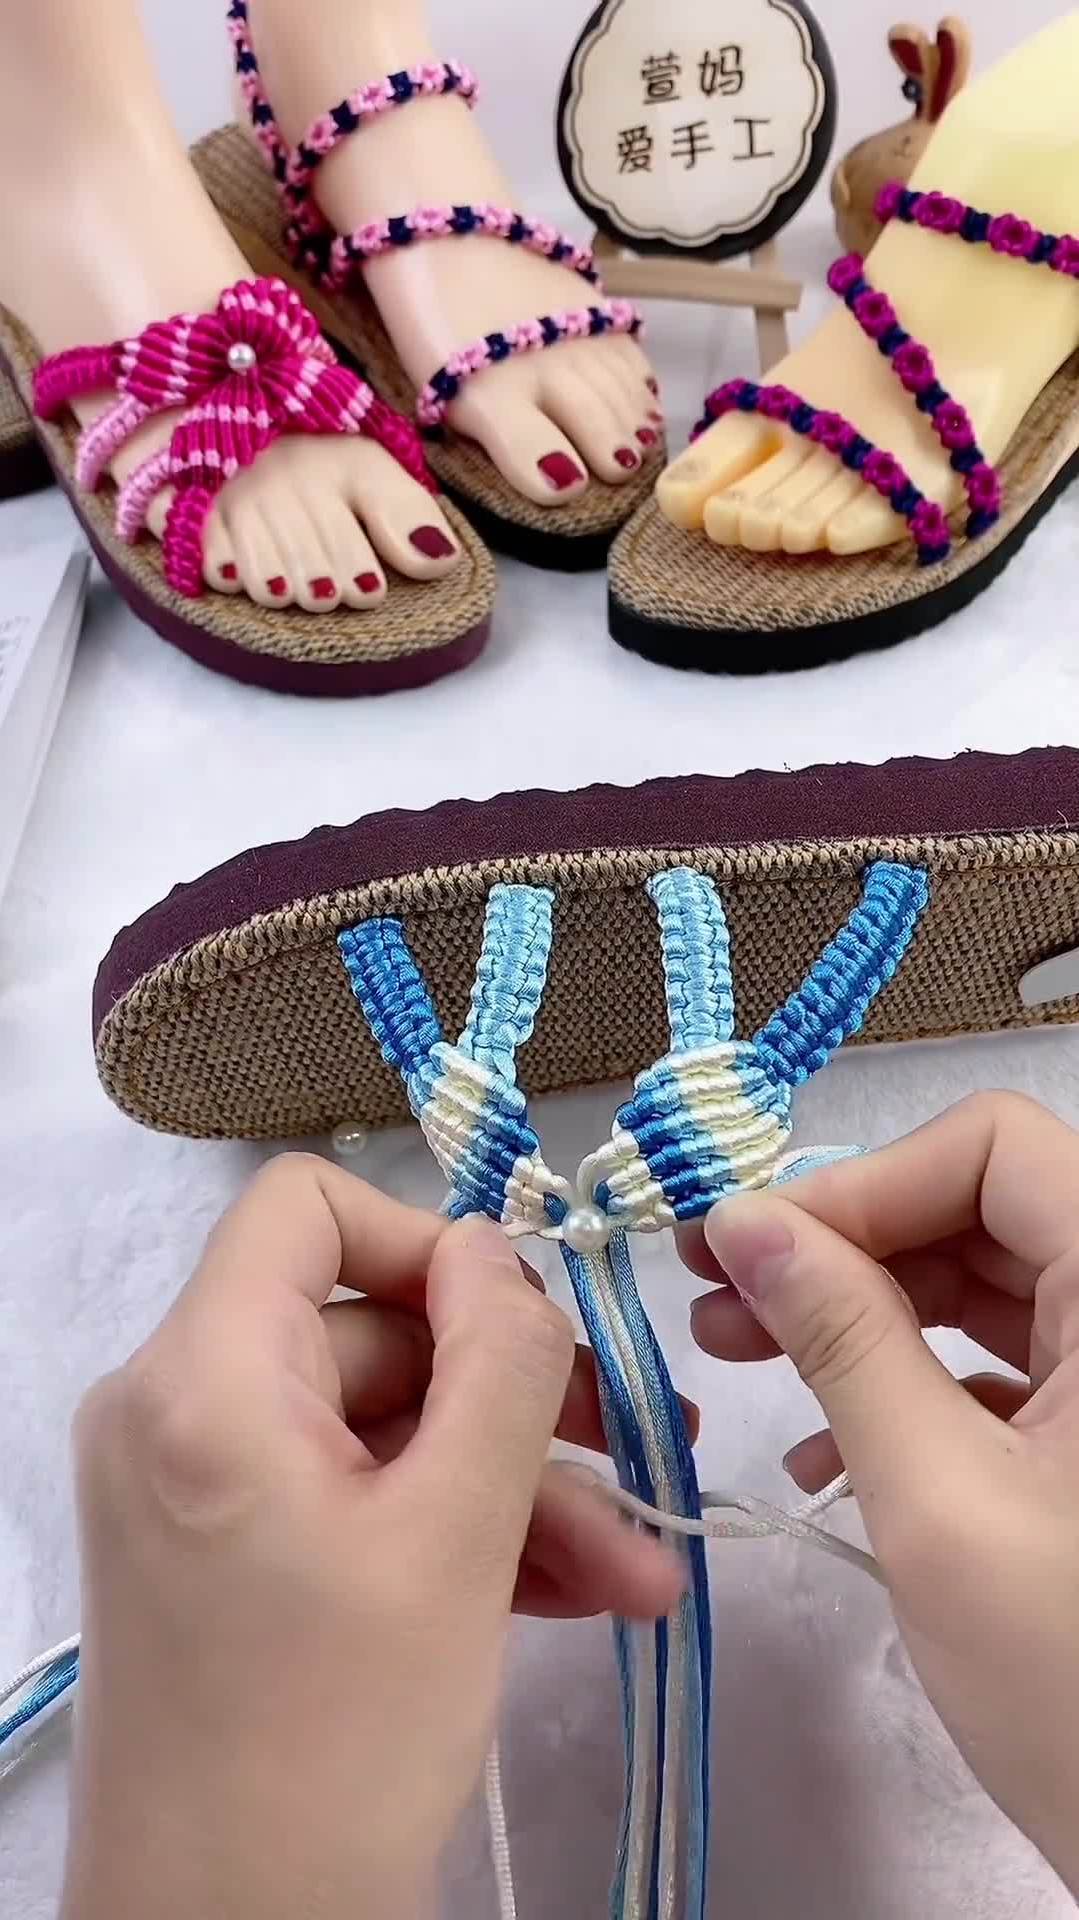 纯手工编织拖鞋中国结拖鞋编织教程手艺